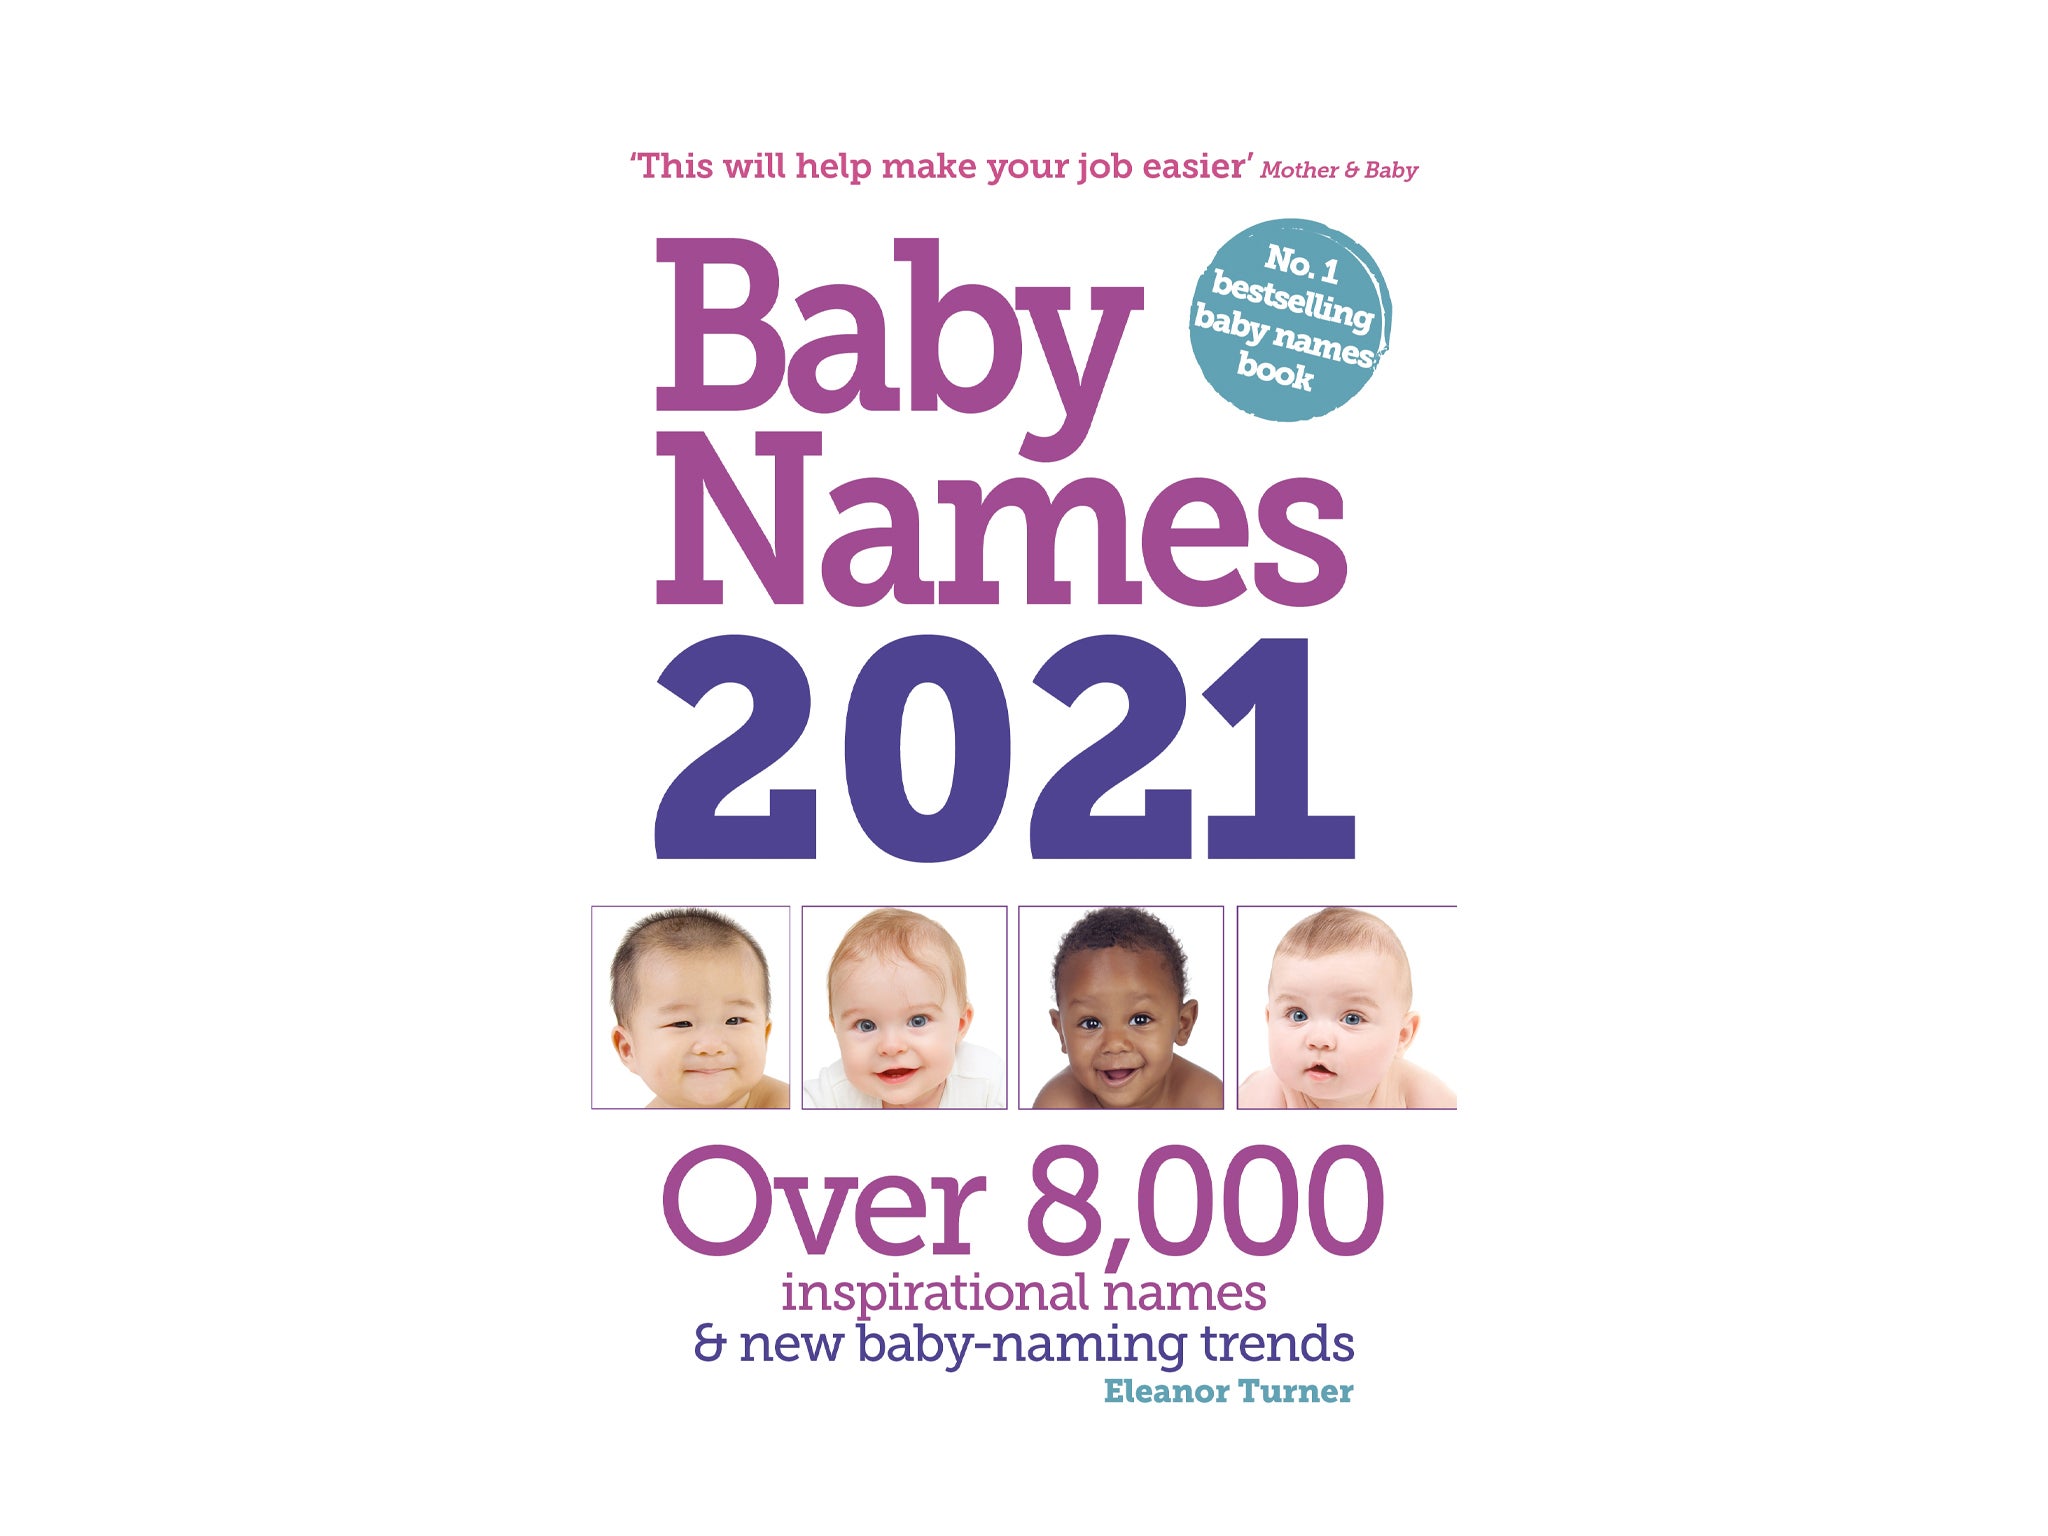 Baby names eleanor turner .jpg